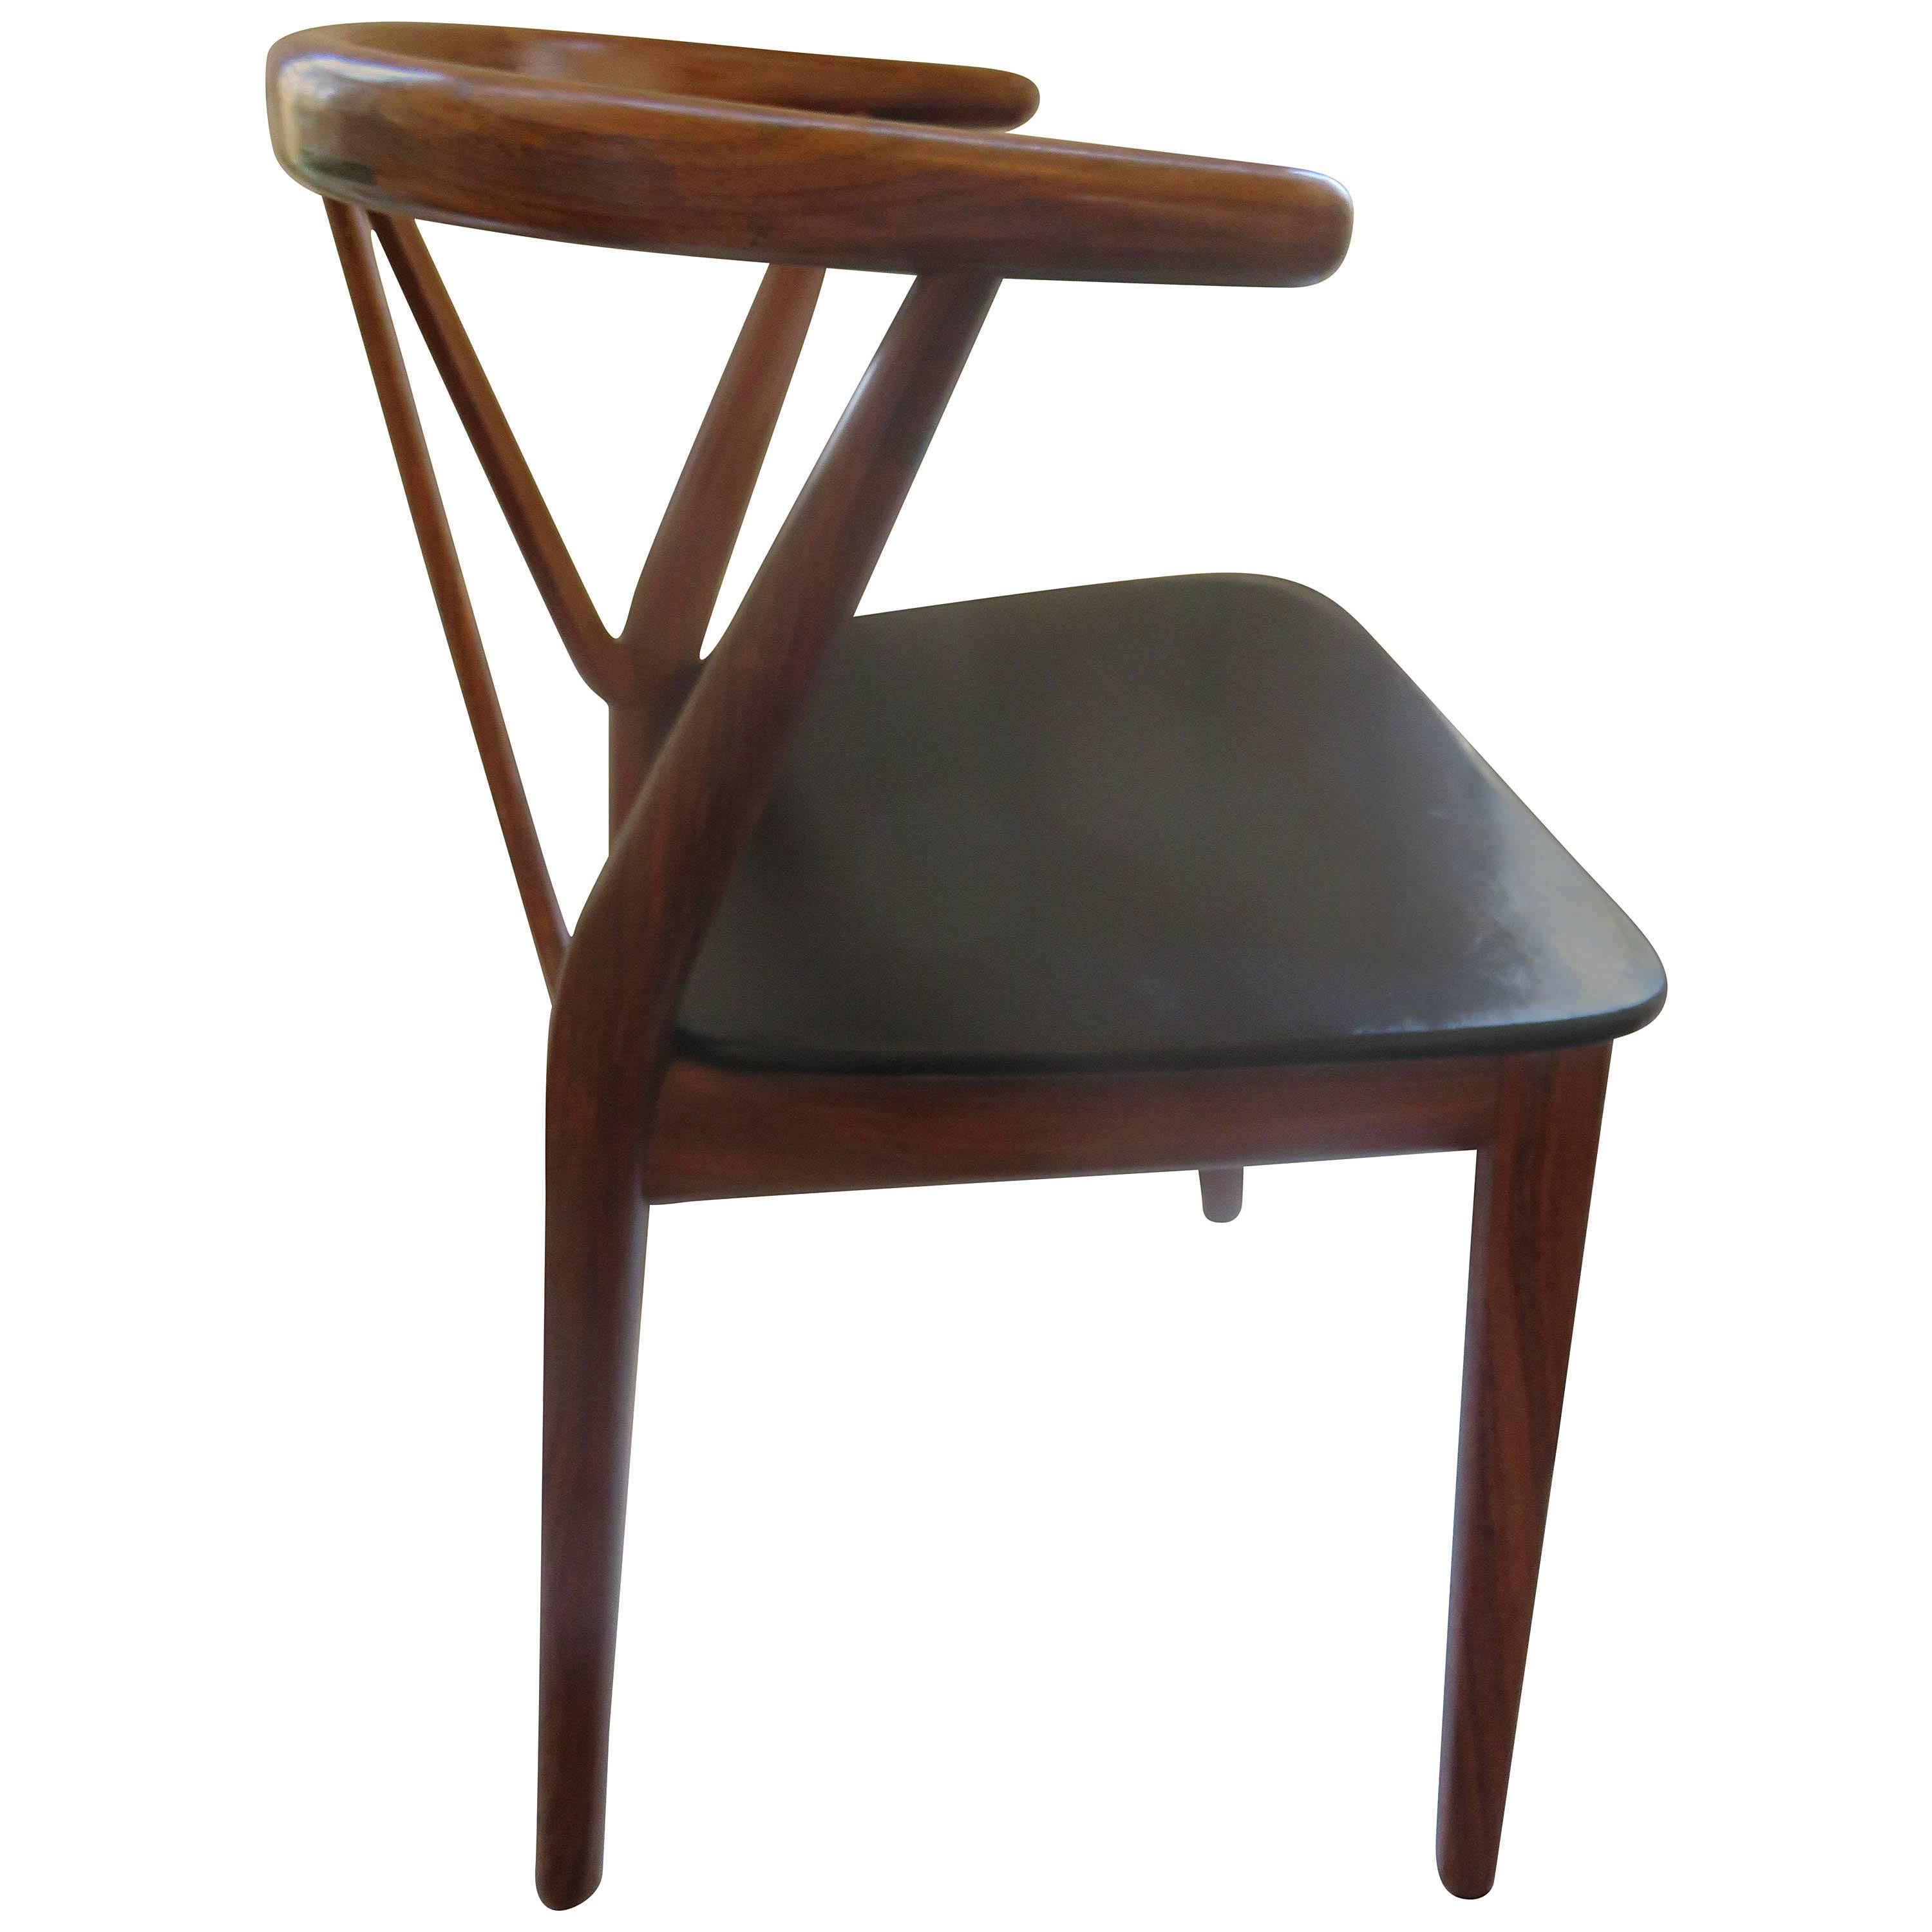 Mid-Century Danish Modern Chair by Henning Kjdaernulf for Bruno Hansen